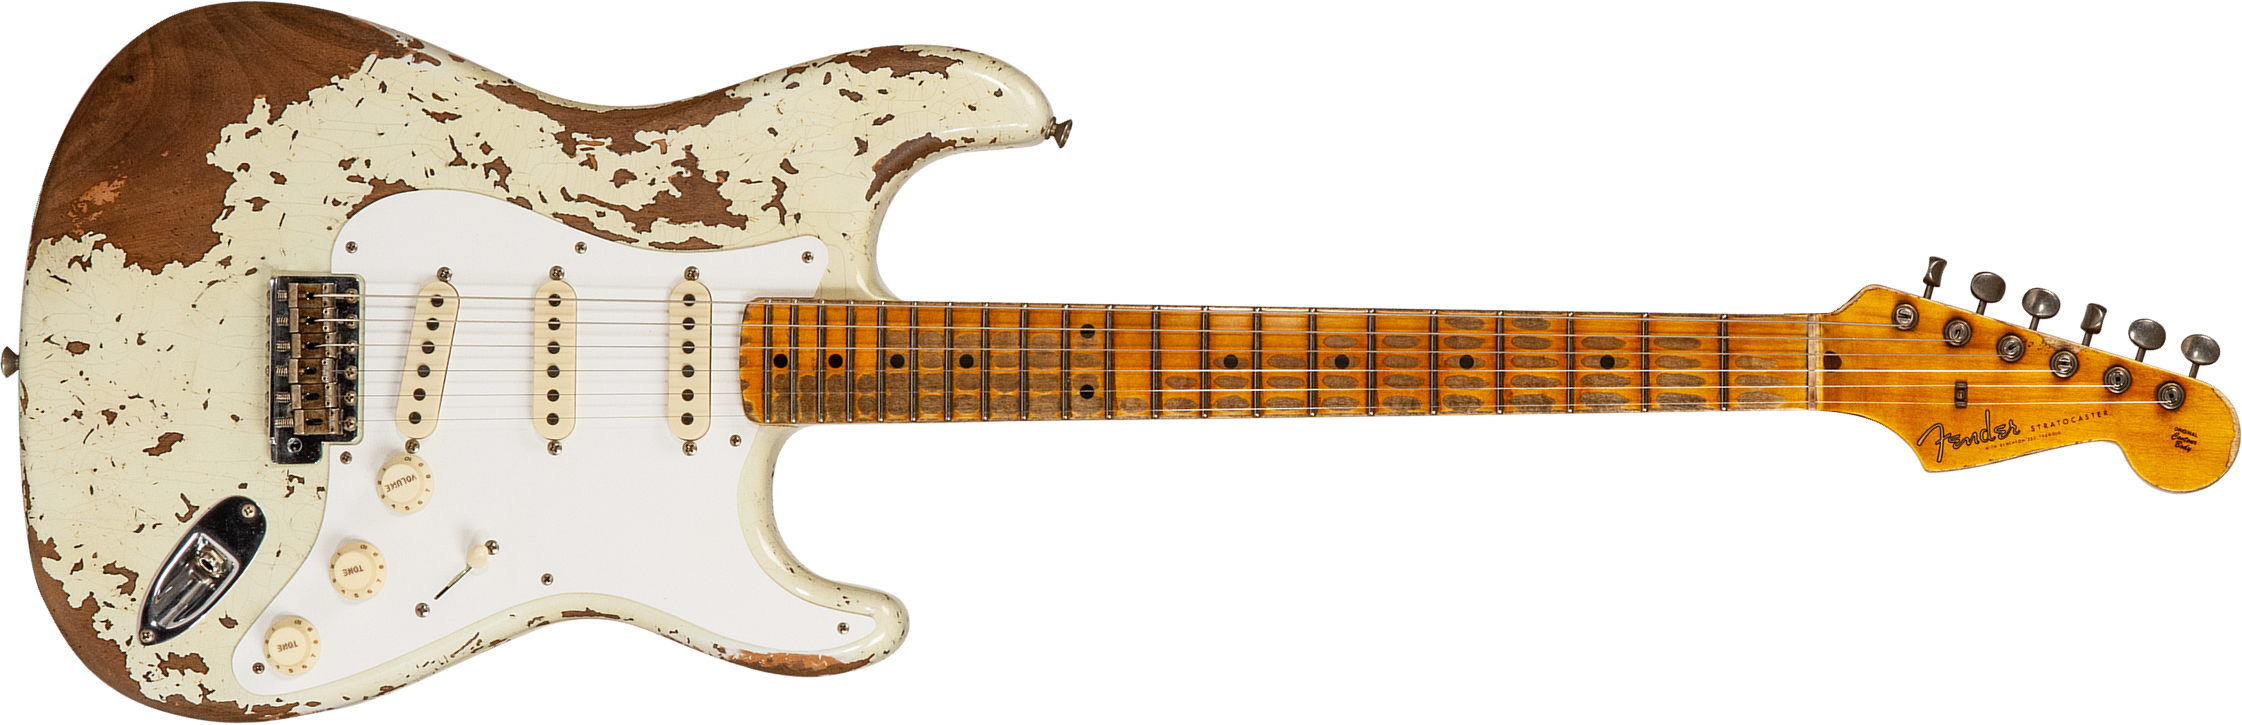 Fender Custom Shop Strat 1956 3s Trem Mn #cz568636 - Super Heavy Relic Aged India Ivory - Elektrische gitaar in Str-vorm - Main picture